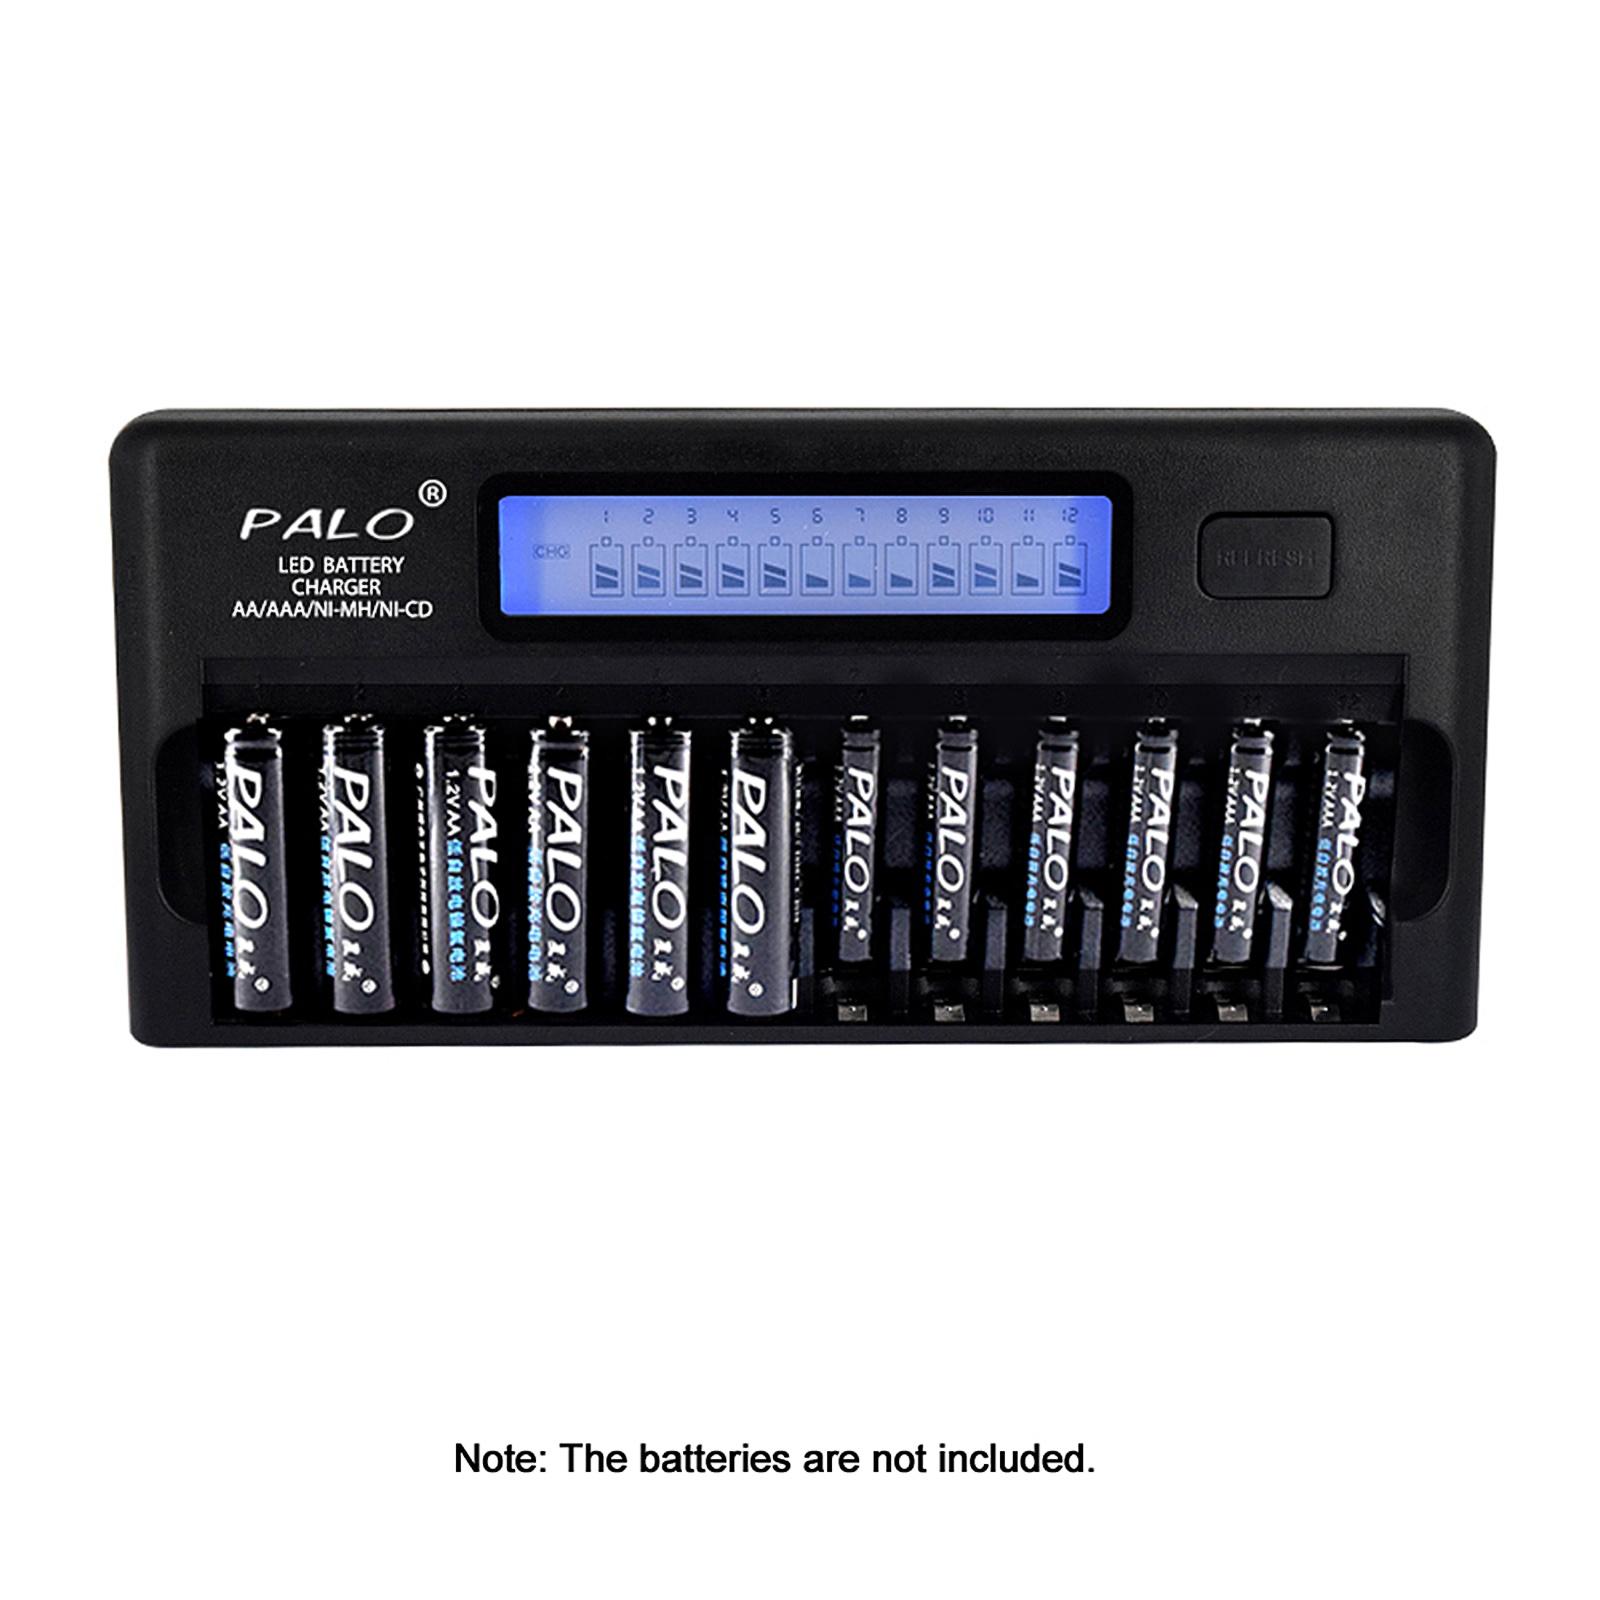 Bộ sạc pin thông minh đa năng PALO PL-NC30 Màn hình LCD 4 inch sạc thông minh nhanh chóng w / 12 Khe cắm pin cho 1.2V 